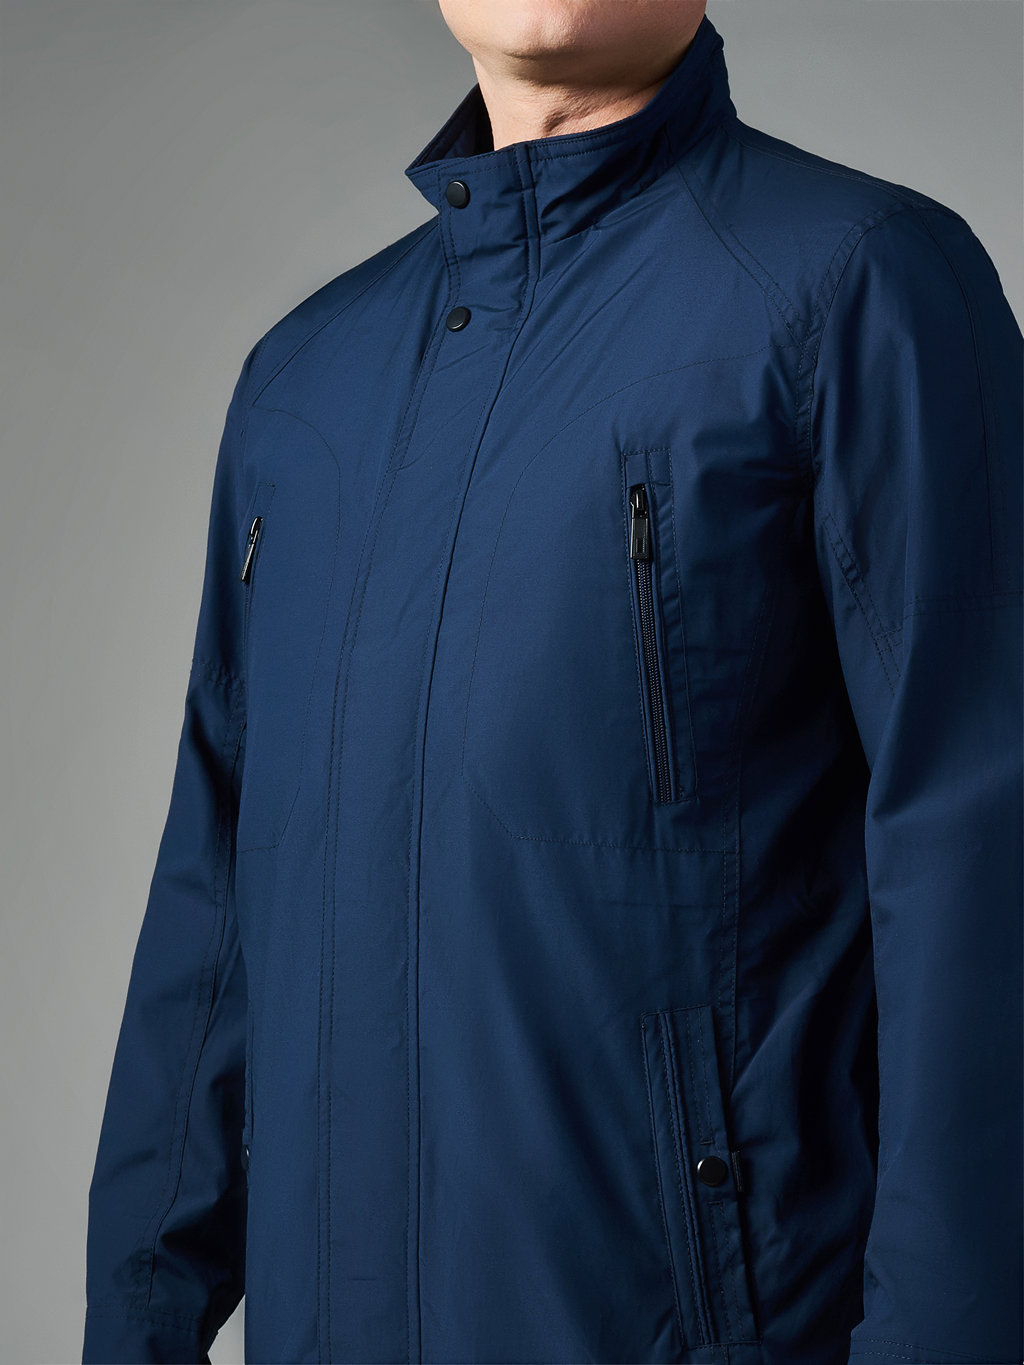 Куртка мужская NW-KM-801